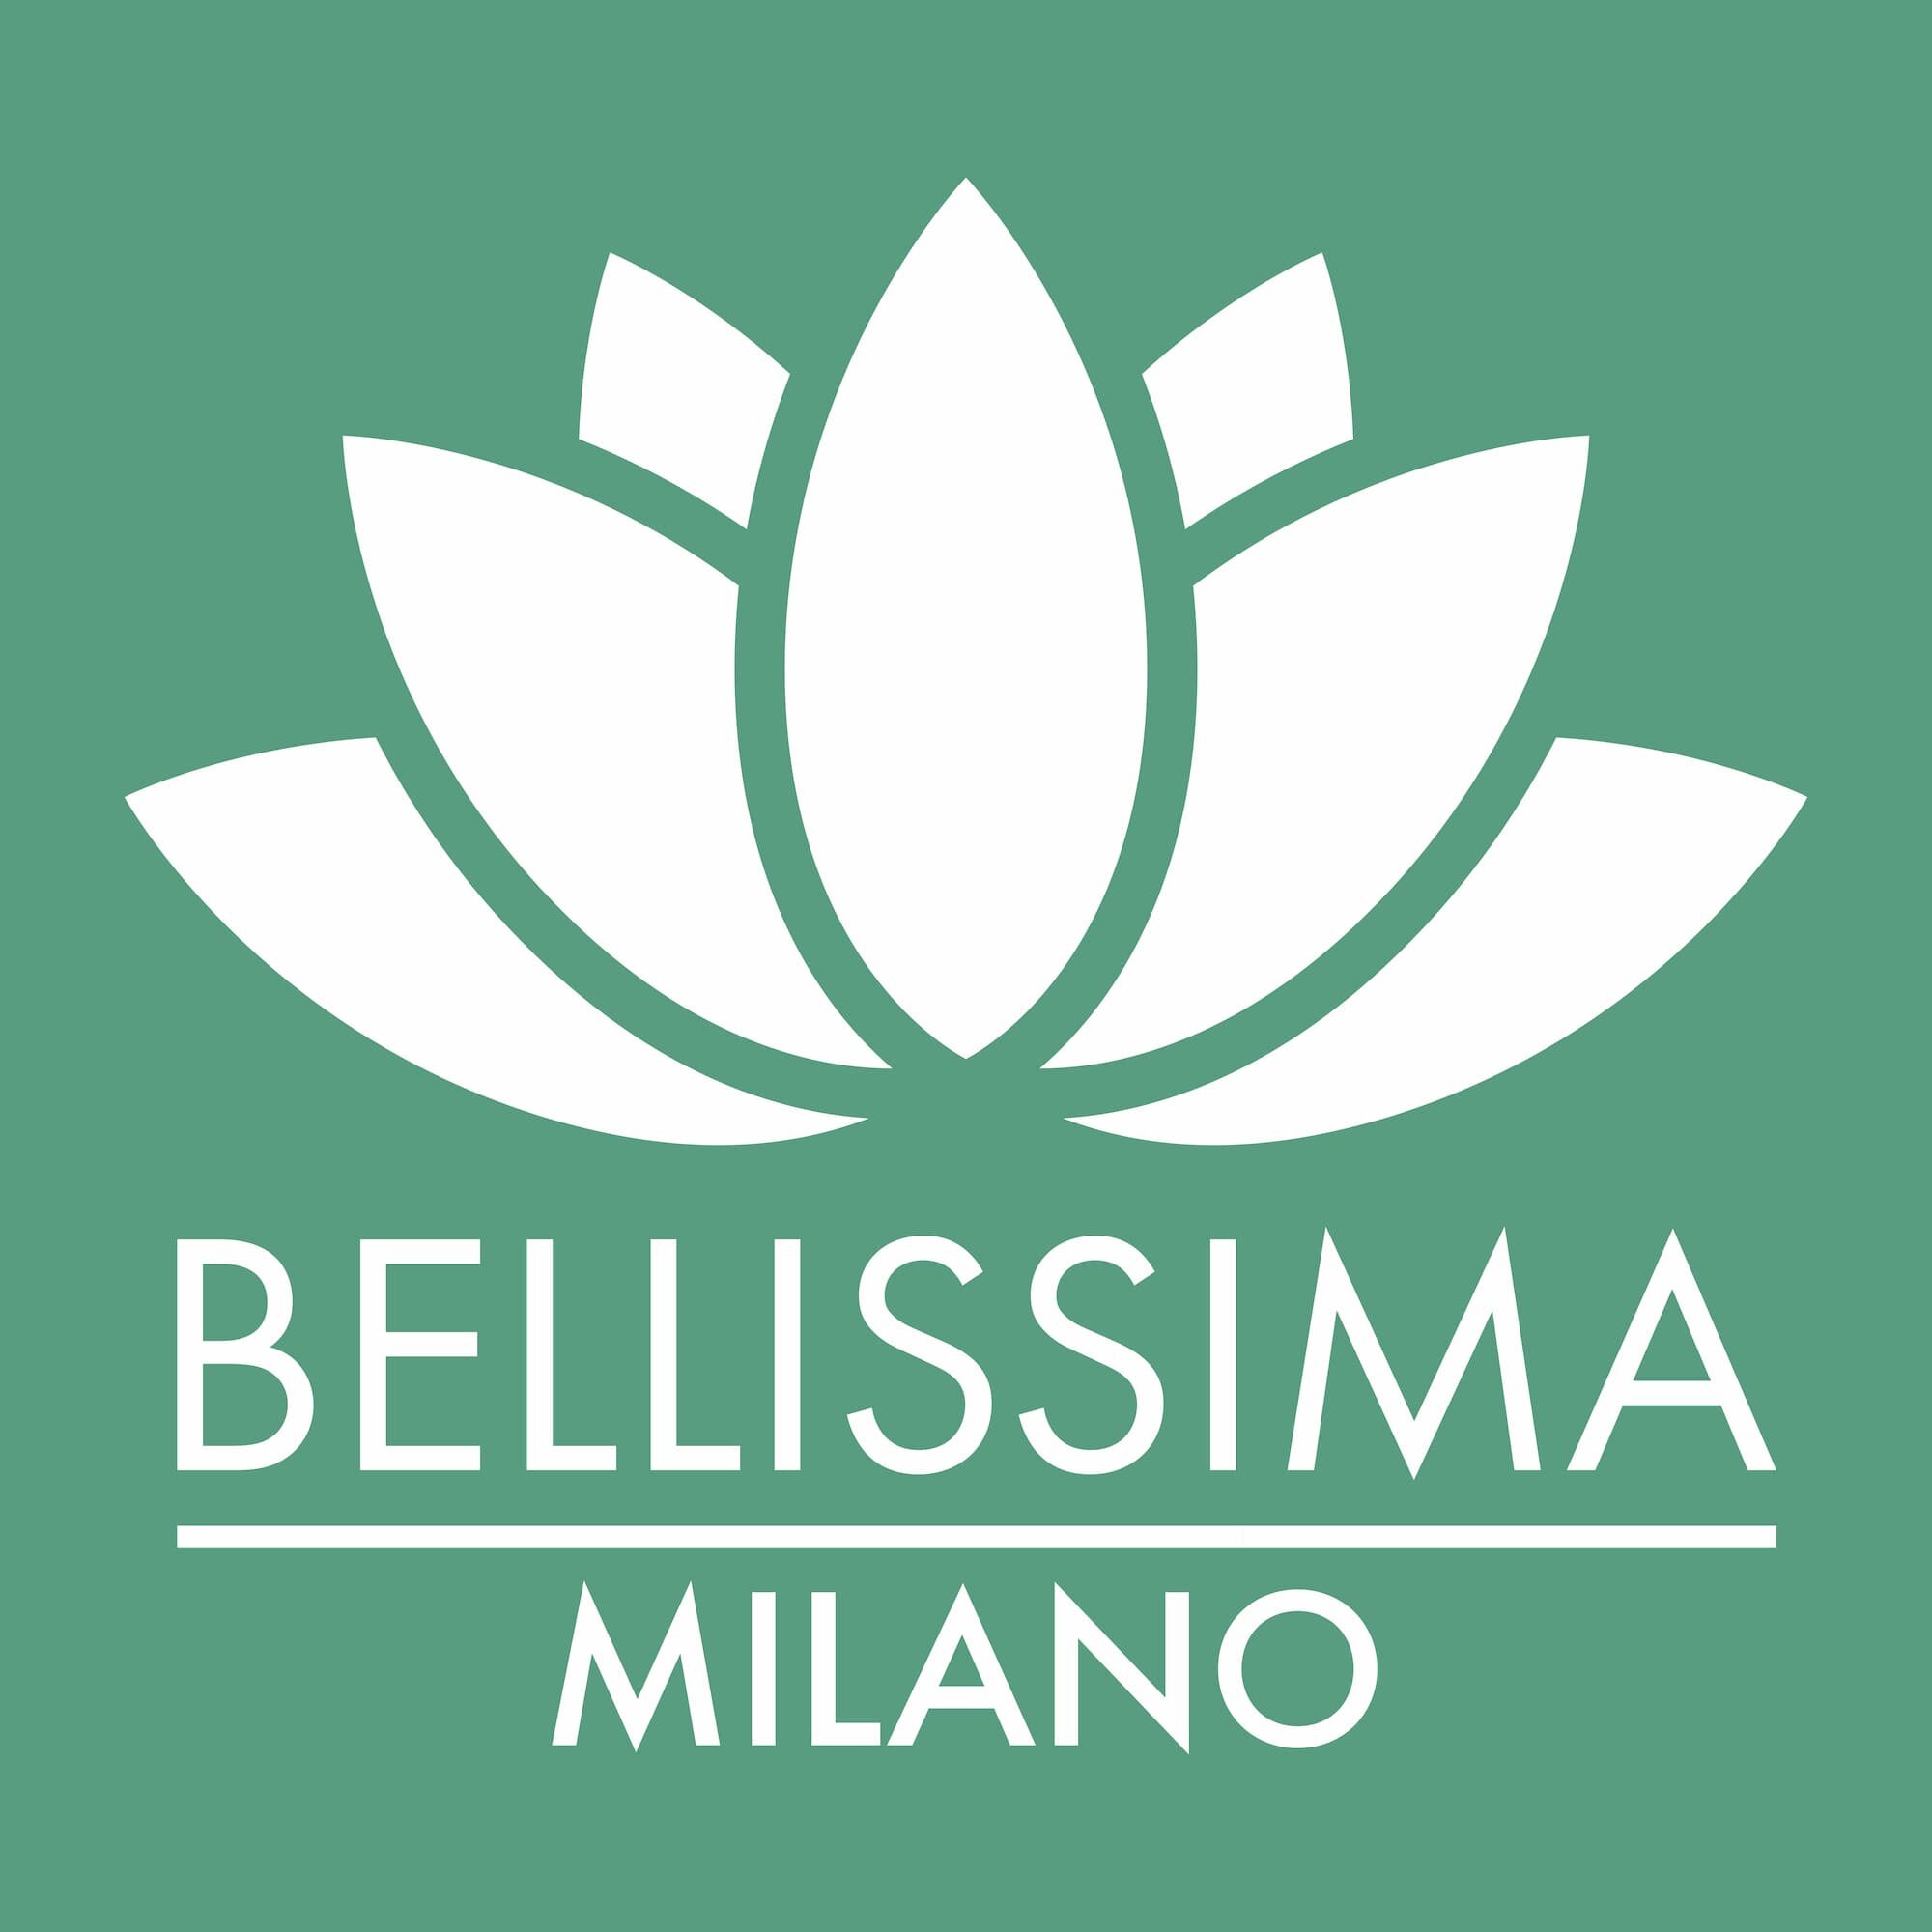 Progettazione_Logo_BellissimaMilano-03 (1).jpg